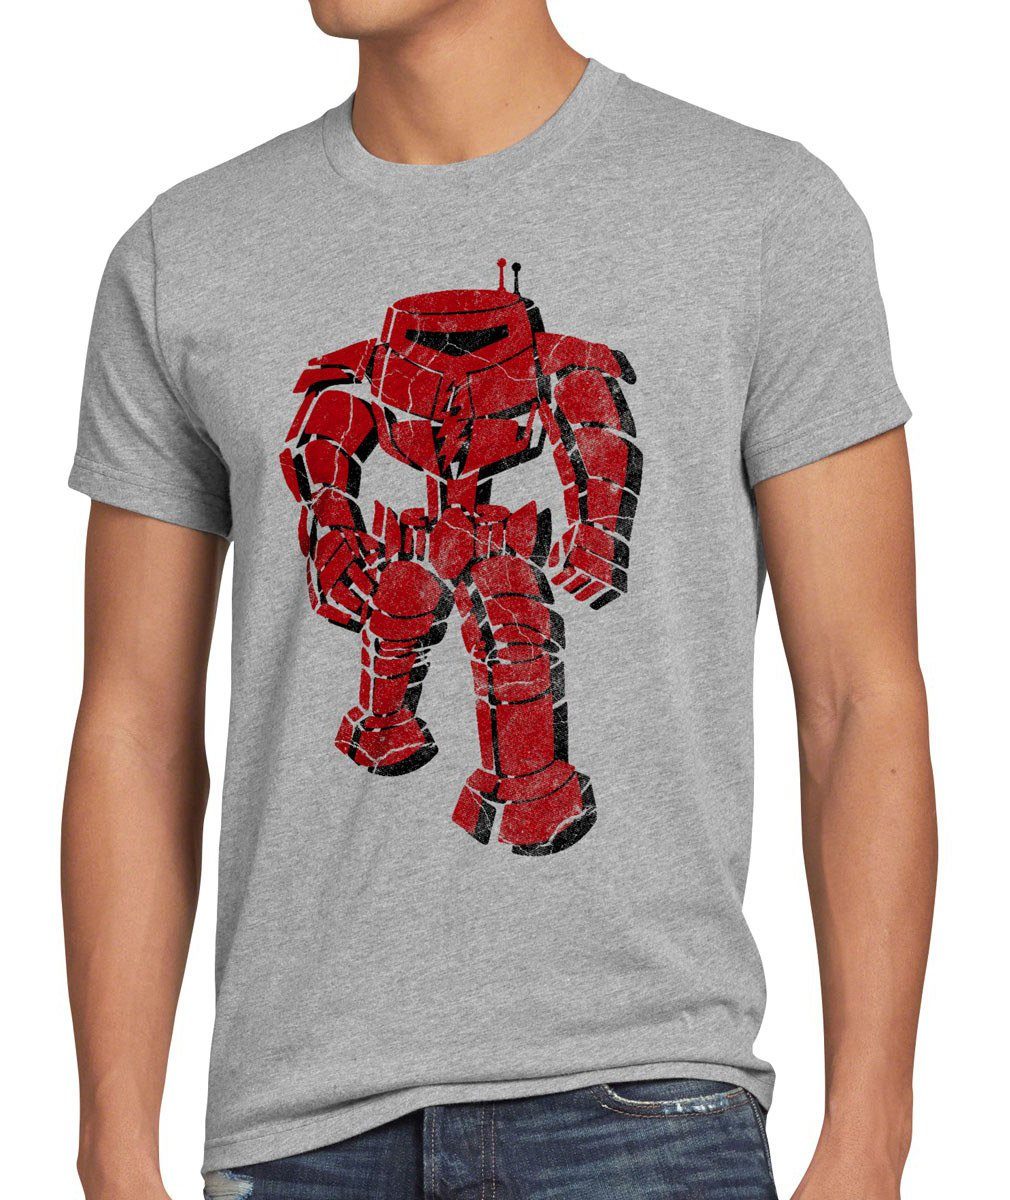 style3 Print-Shirt Herren T-Shirt Robot Sheldon Bang Serie Fan Big the Roboter comic cooper Theory grau meliert